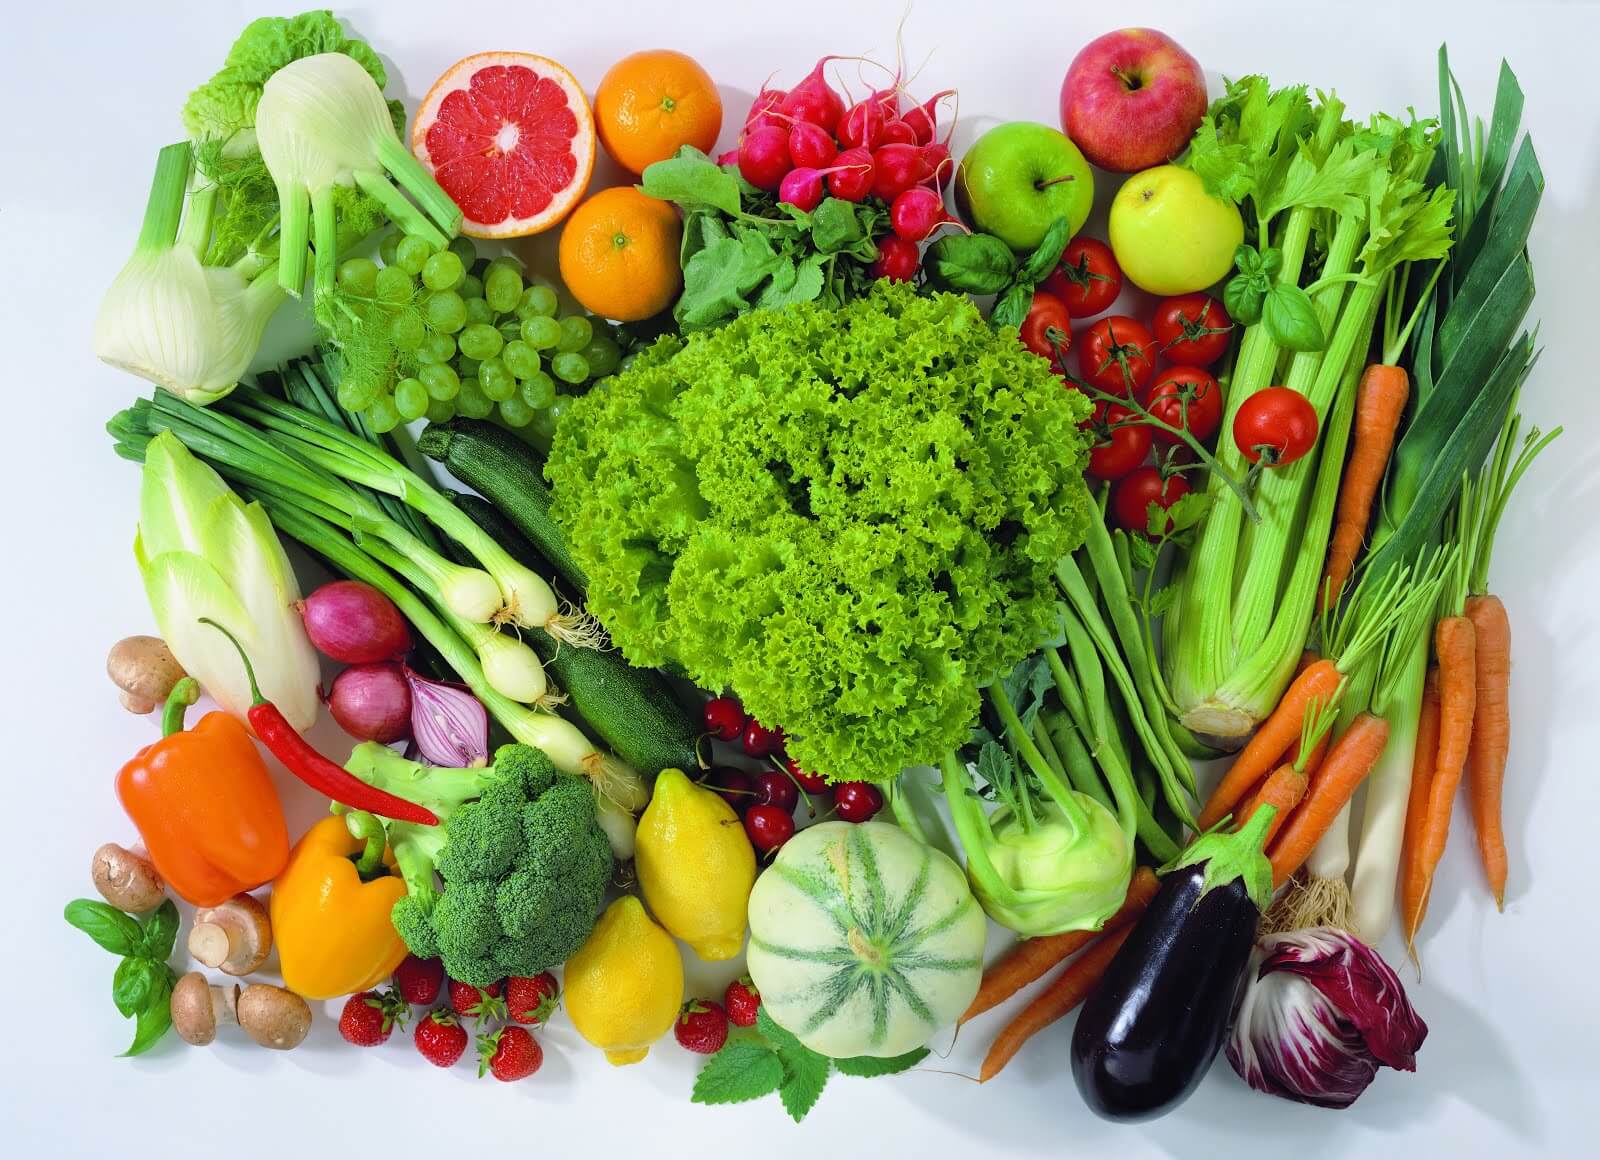 Frugt og grønt er en stor del af den nye kostpyramide